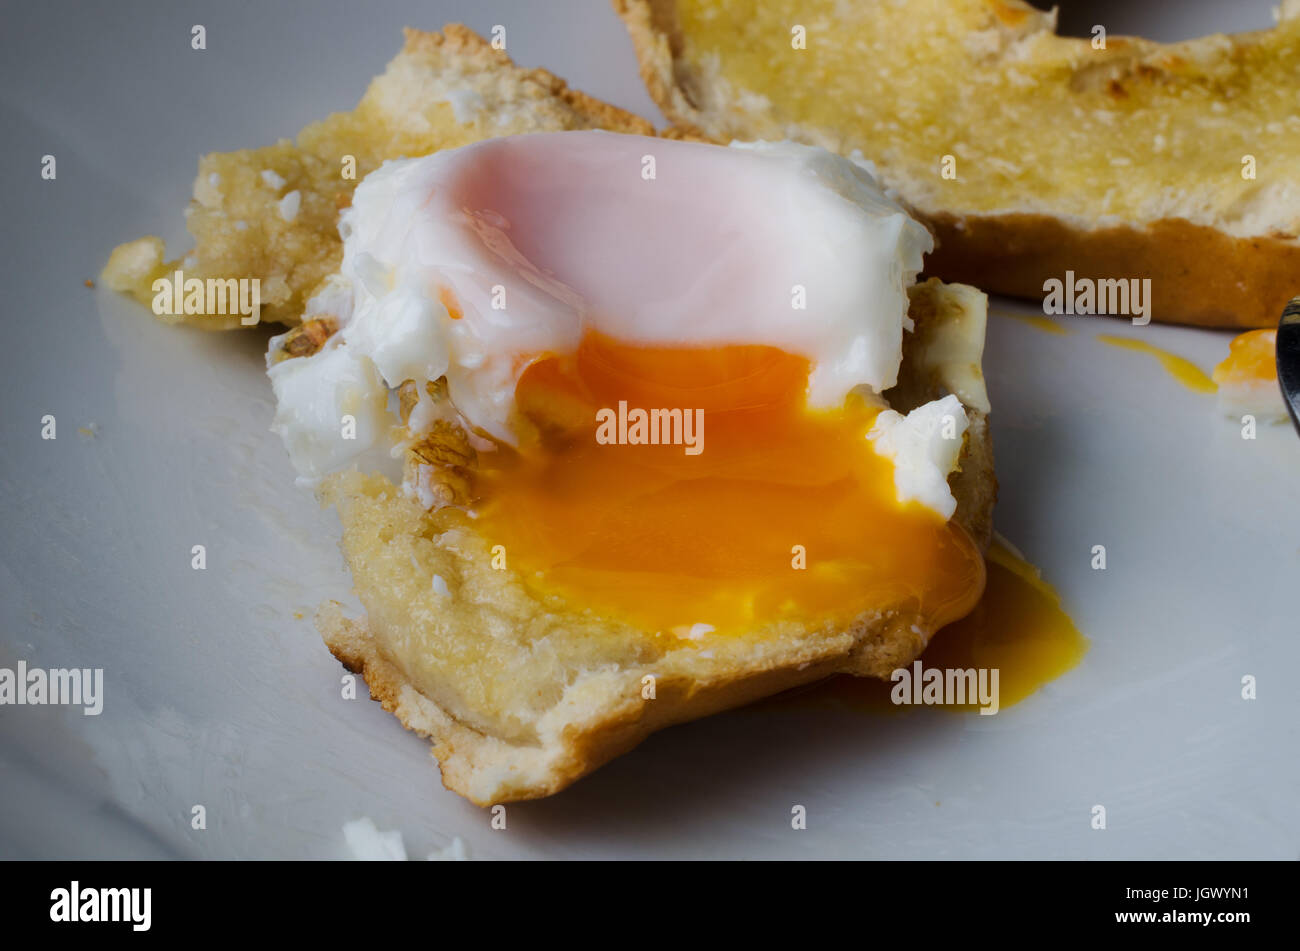 Close up di un parzialmente consumato senza intervallo uovo fritto a tostare bagel con tuorlo d'uovo trafili oltre il bordo. Metà rimanente bagel in background. Foto Stock